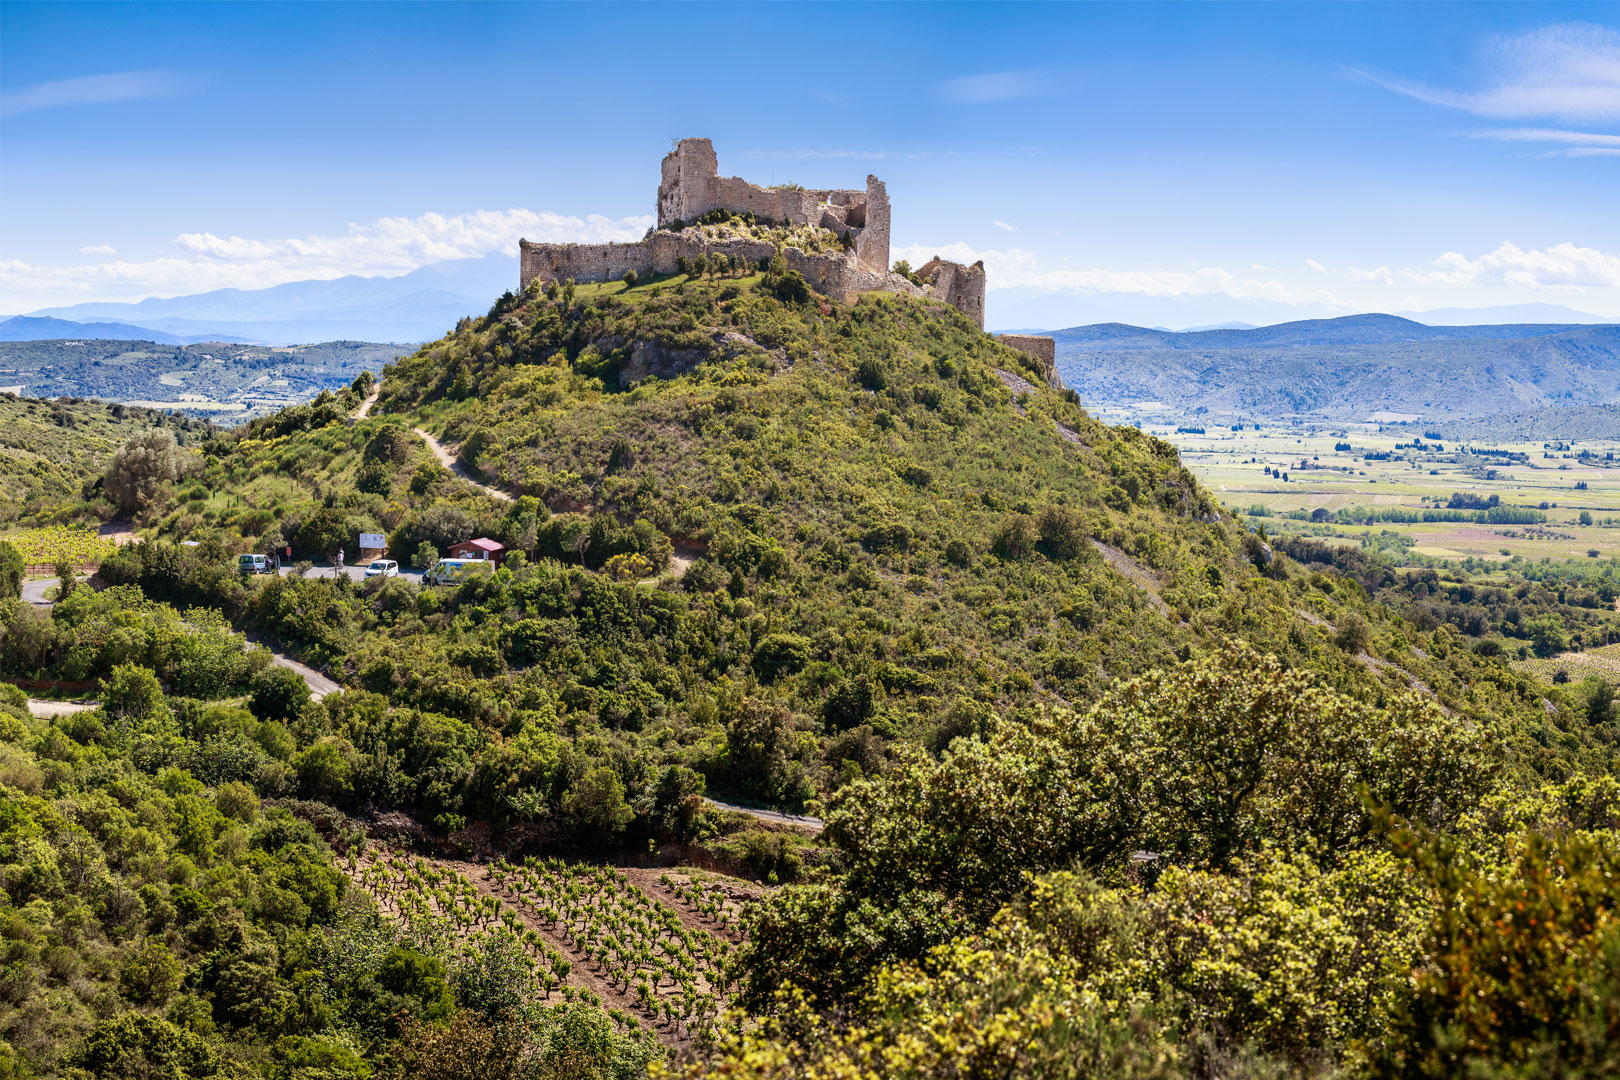 Magnifique vue du château d'Aguilar, inscrit dans un environnement naturel